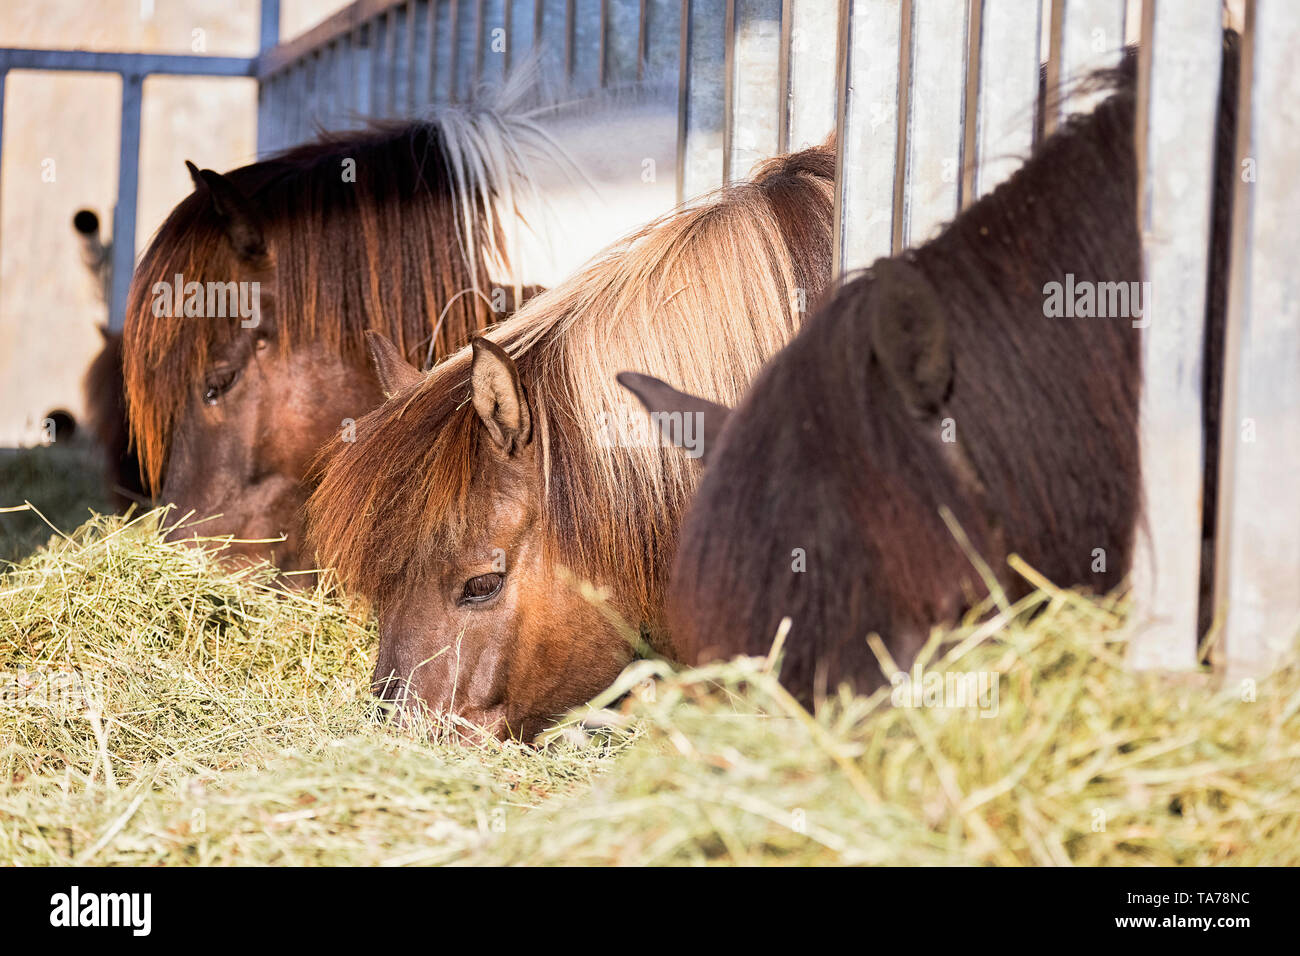 Caballo islandés. Los caballos comiendo heno en un establo abierto. Austria Foto de stock